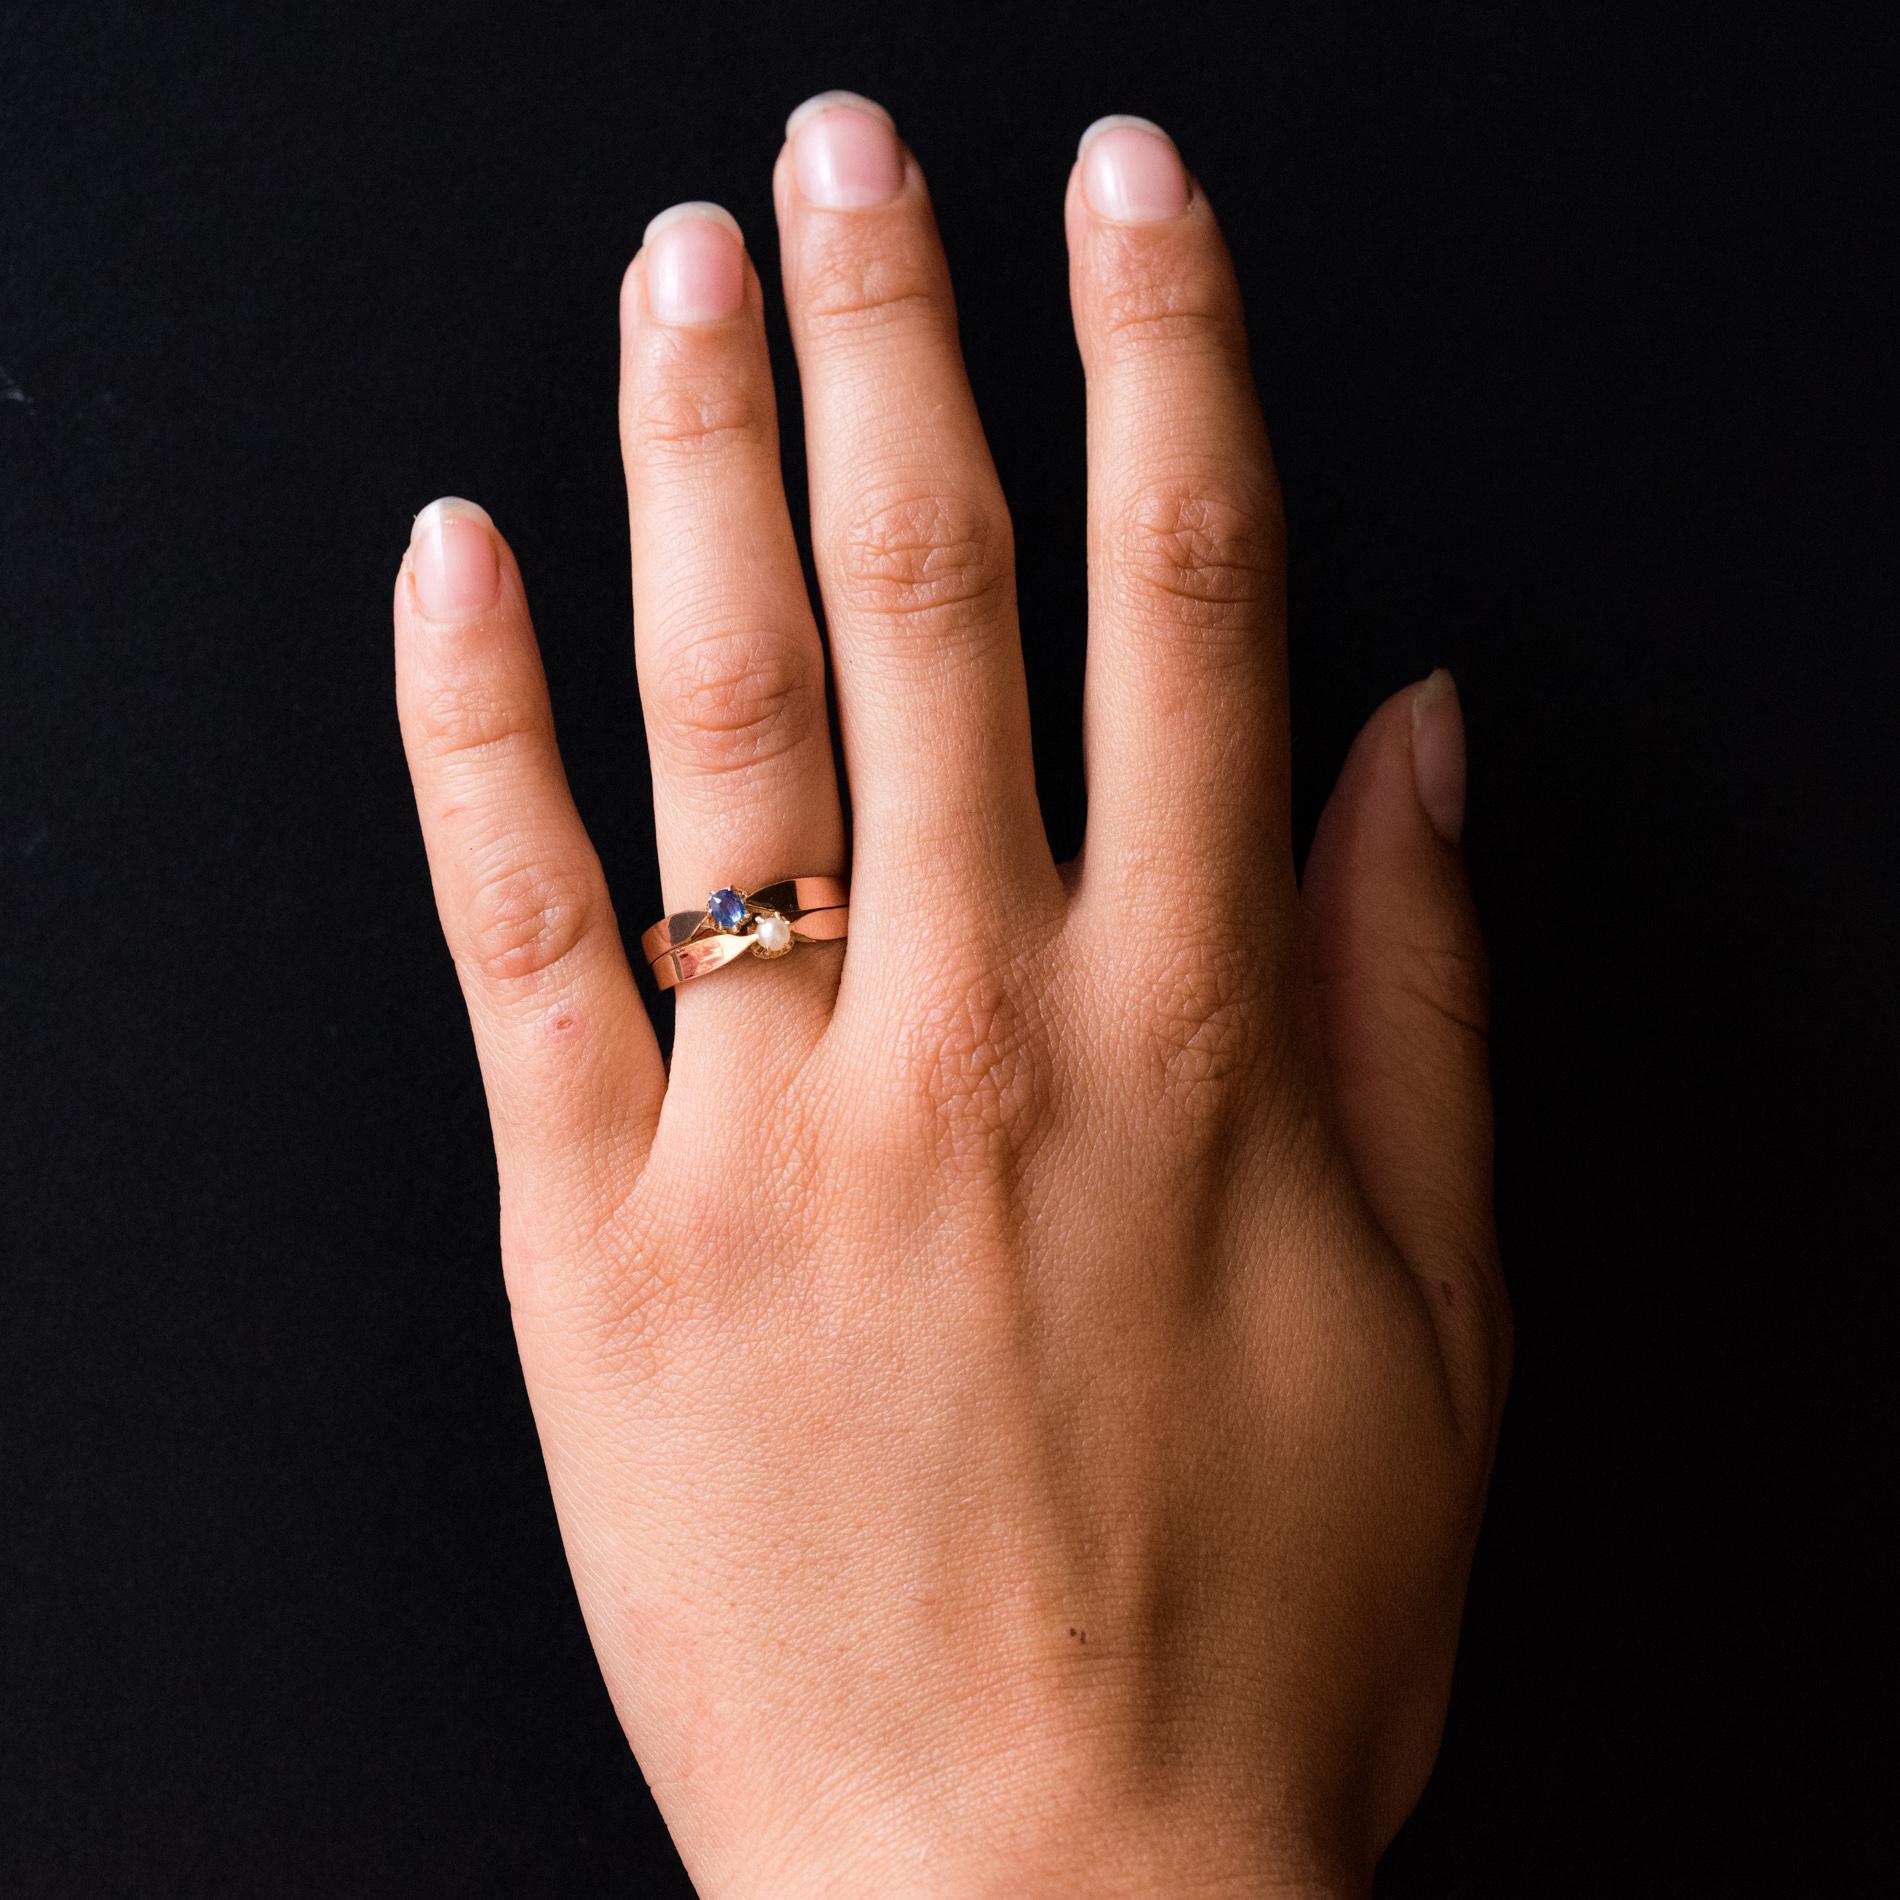 Ring aus 18 Karat Roségold.
Schöner antiker Charme-Ring, er besteht aus einem flachen Doppelring wie ein goldenes Band, das asymmetrisch eine natürliche Perle und einen Saphir im Kissenschliff auf seiner Oberseite hält.
Gewicht des Saphirs: etwa